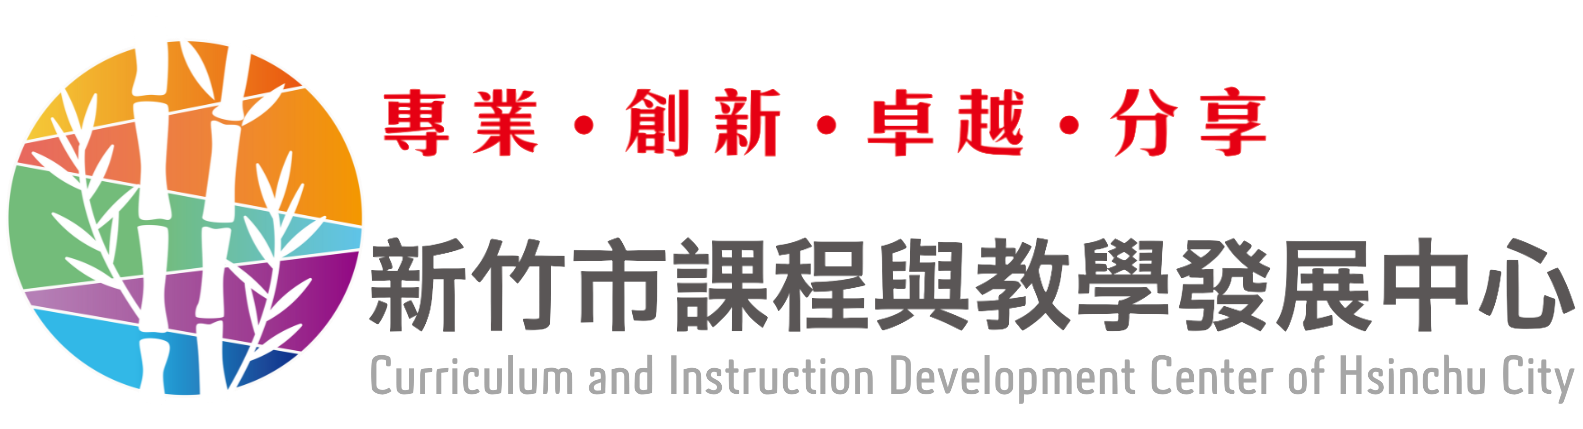 新竹市課程與教學發展中心網站LOGO